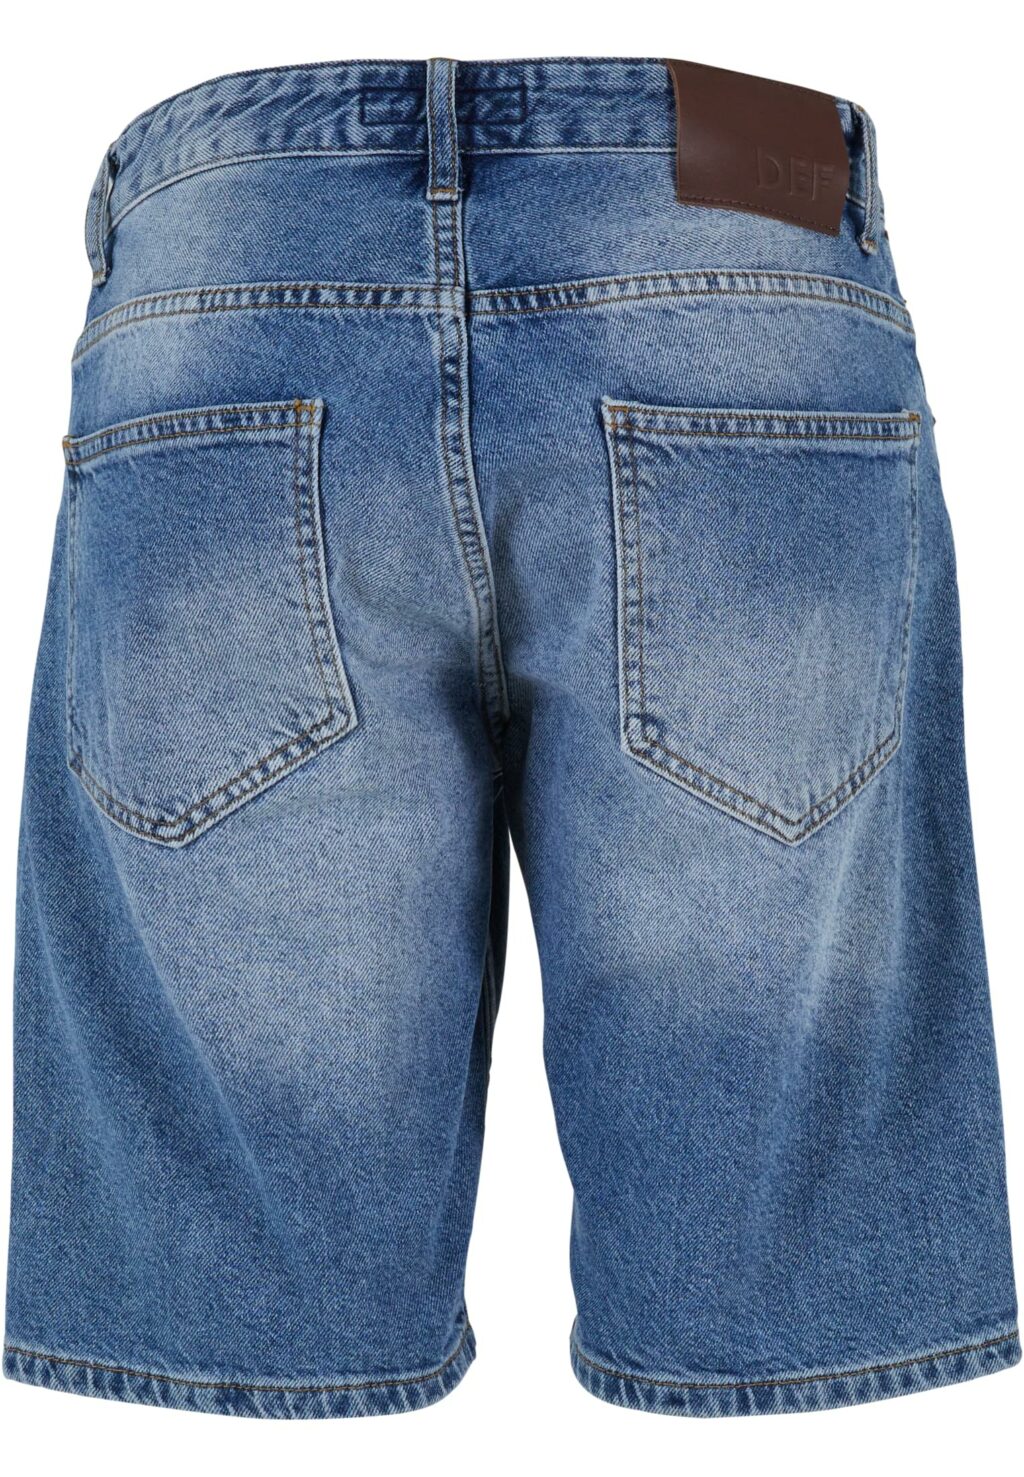 Jeanshorts Milo blue DFSH036